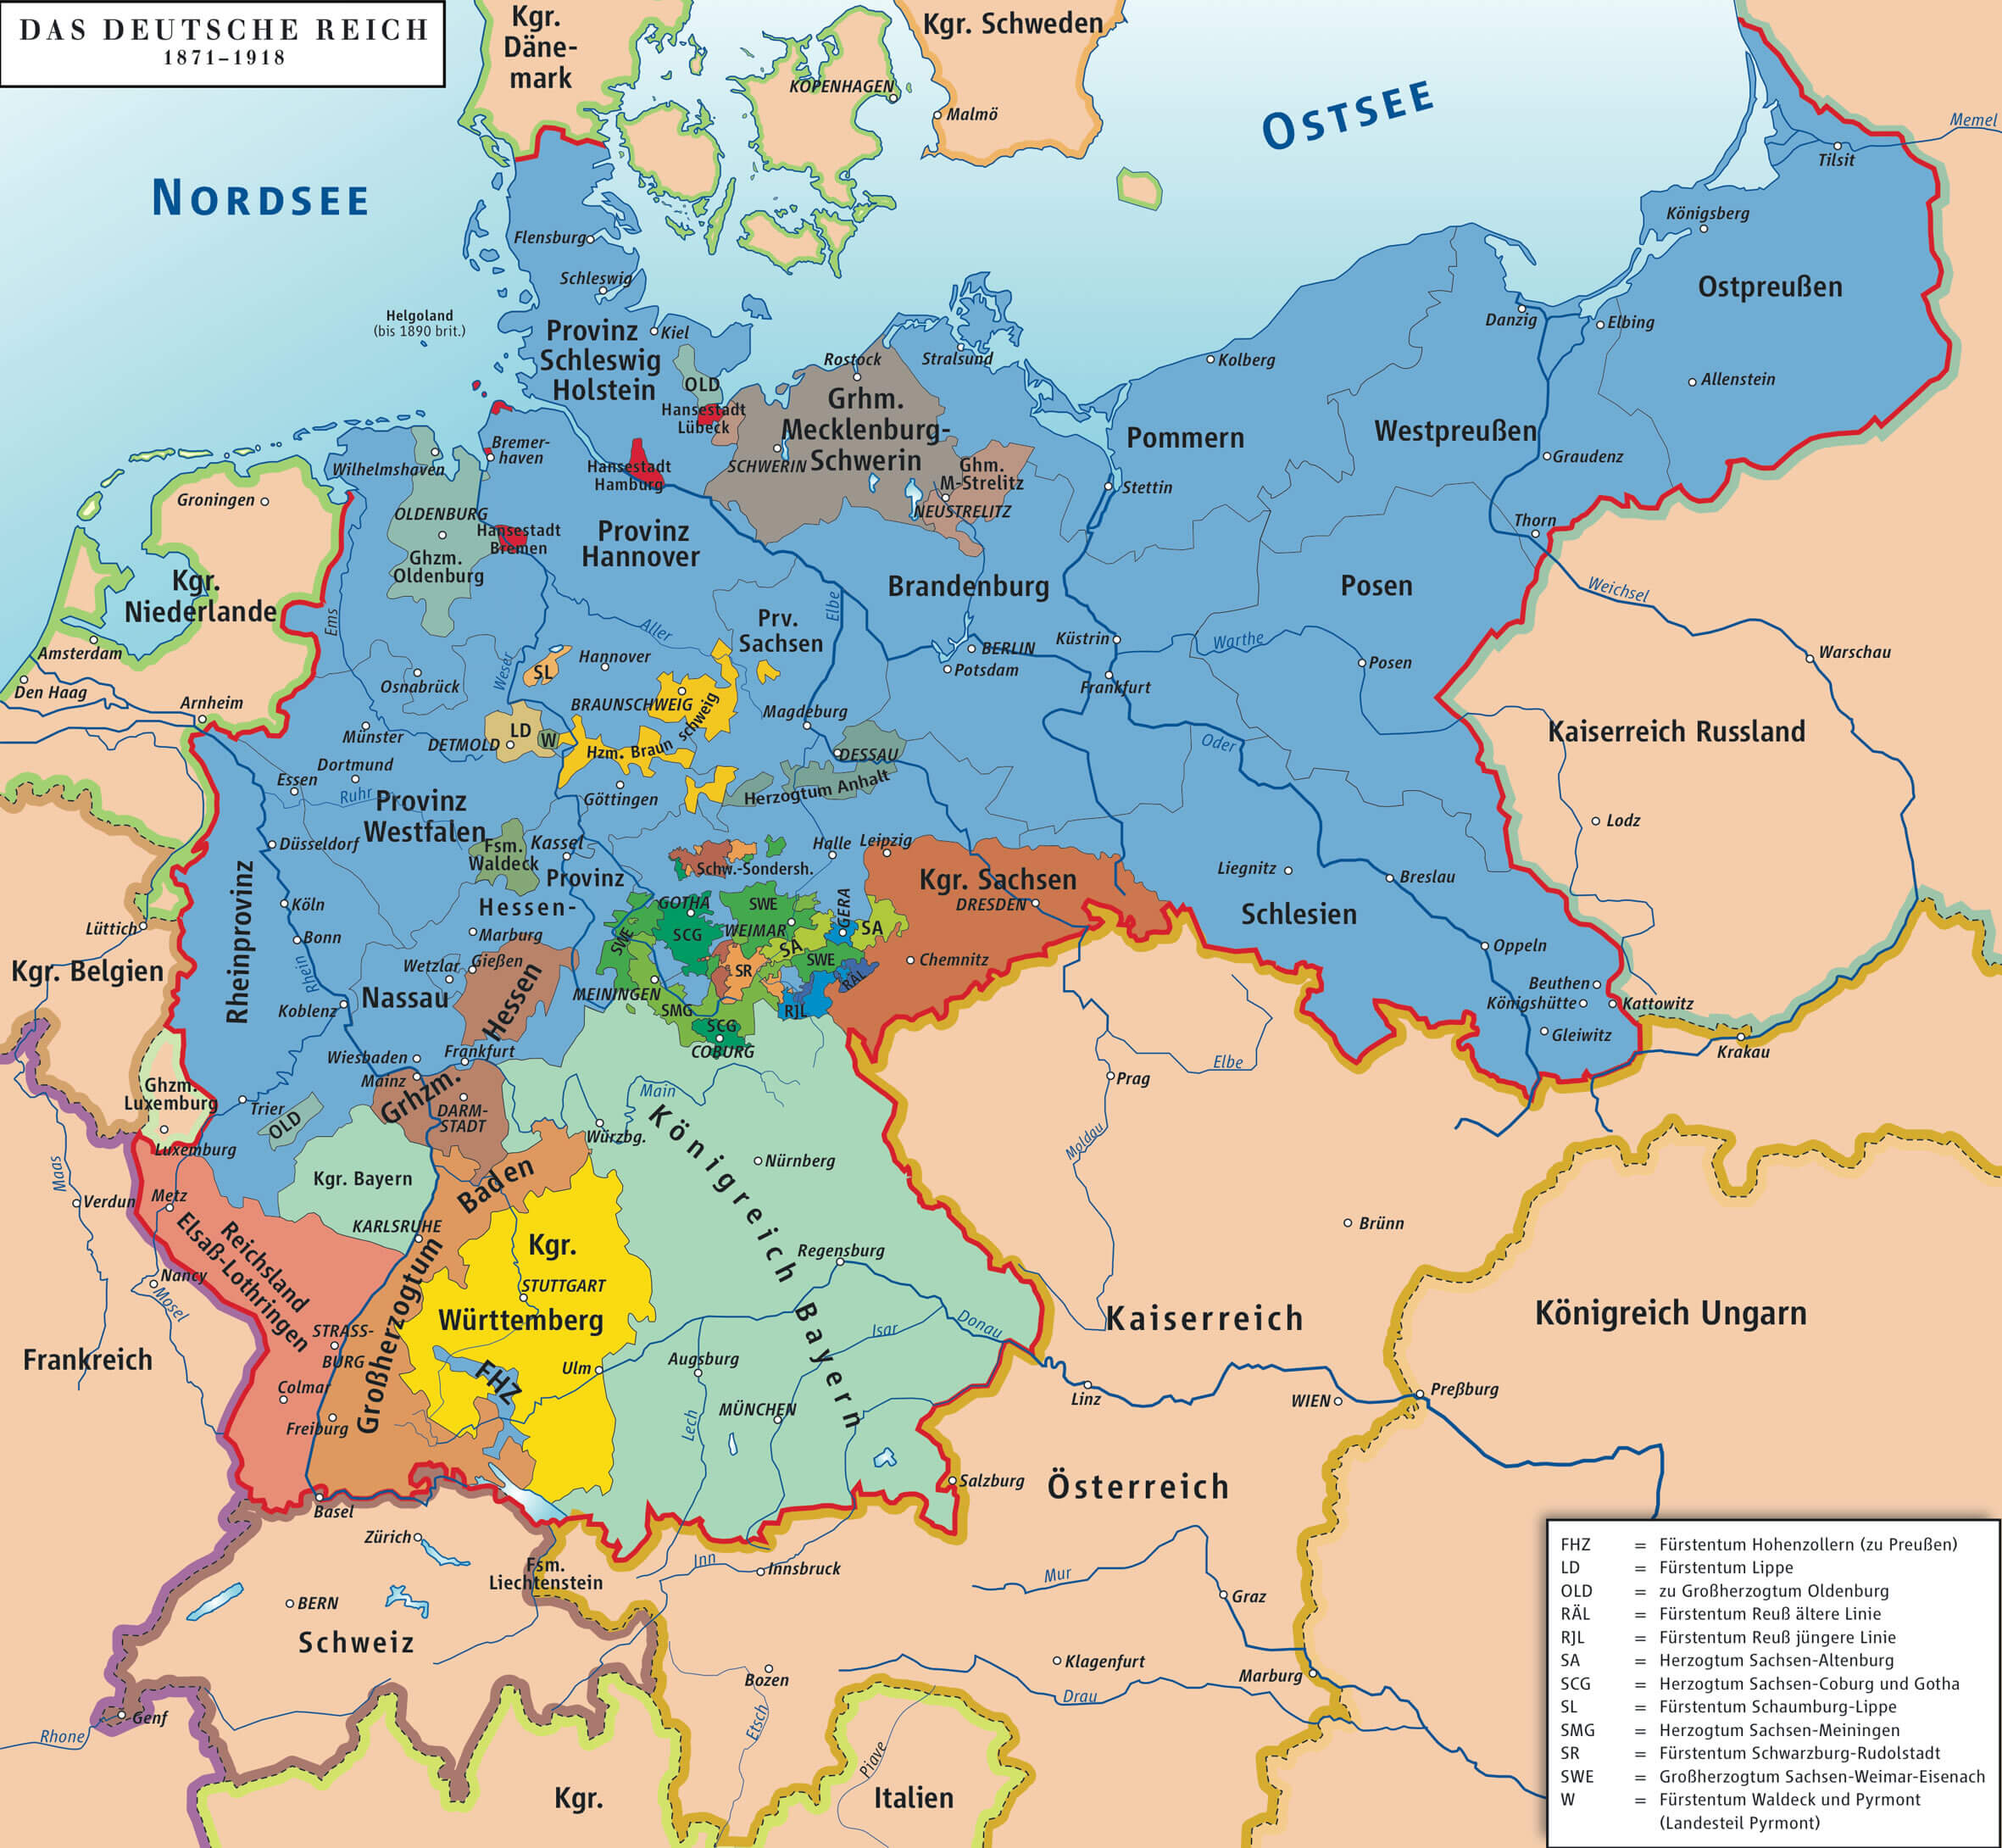 deutsche reich karte 1871 1918